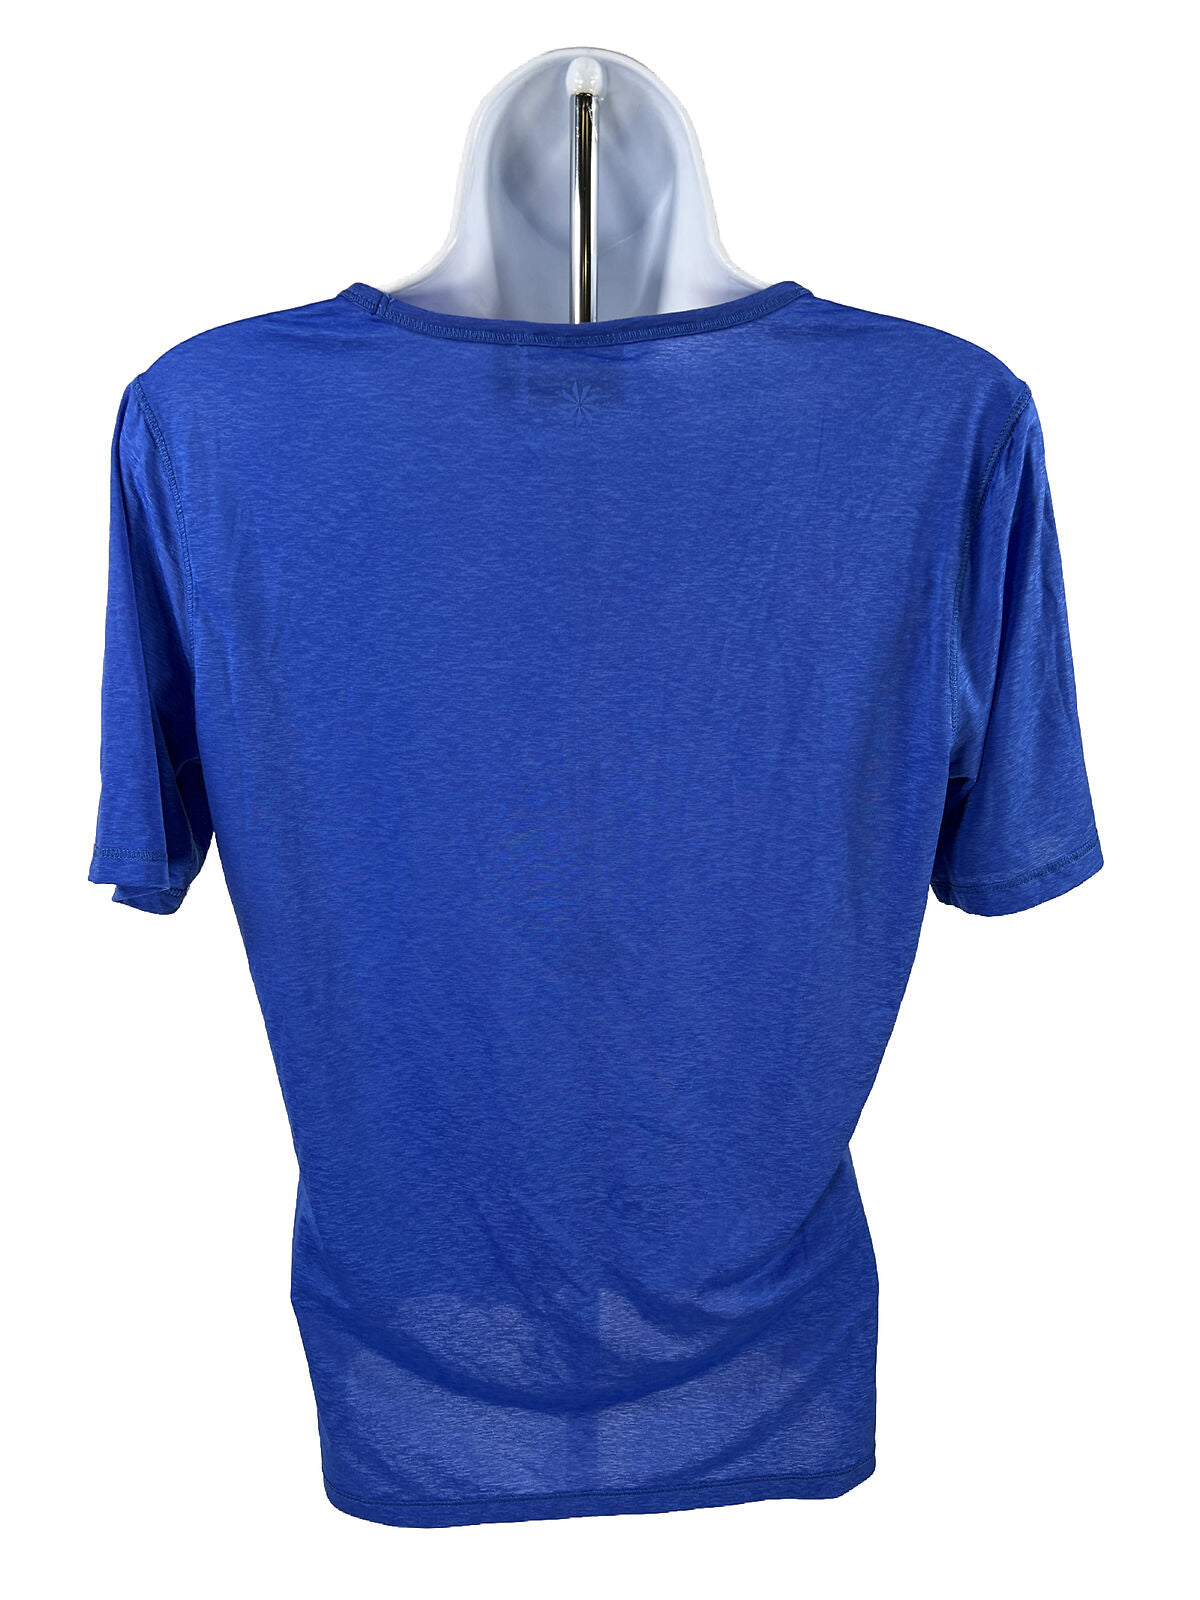 Athleta Camiseta deportiva de manga corta con cuello en V azul para mujer - M